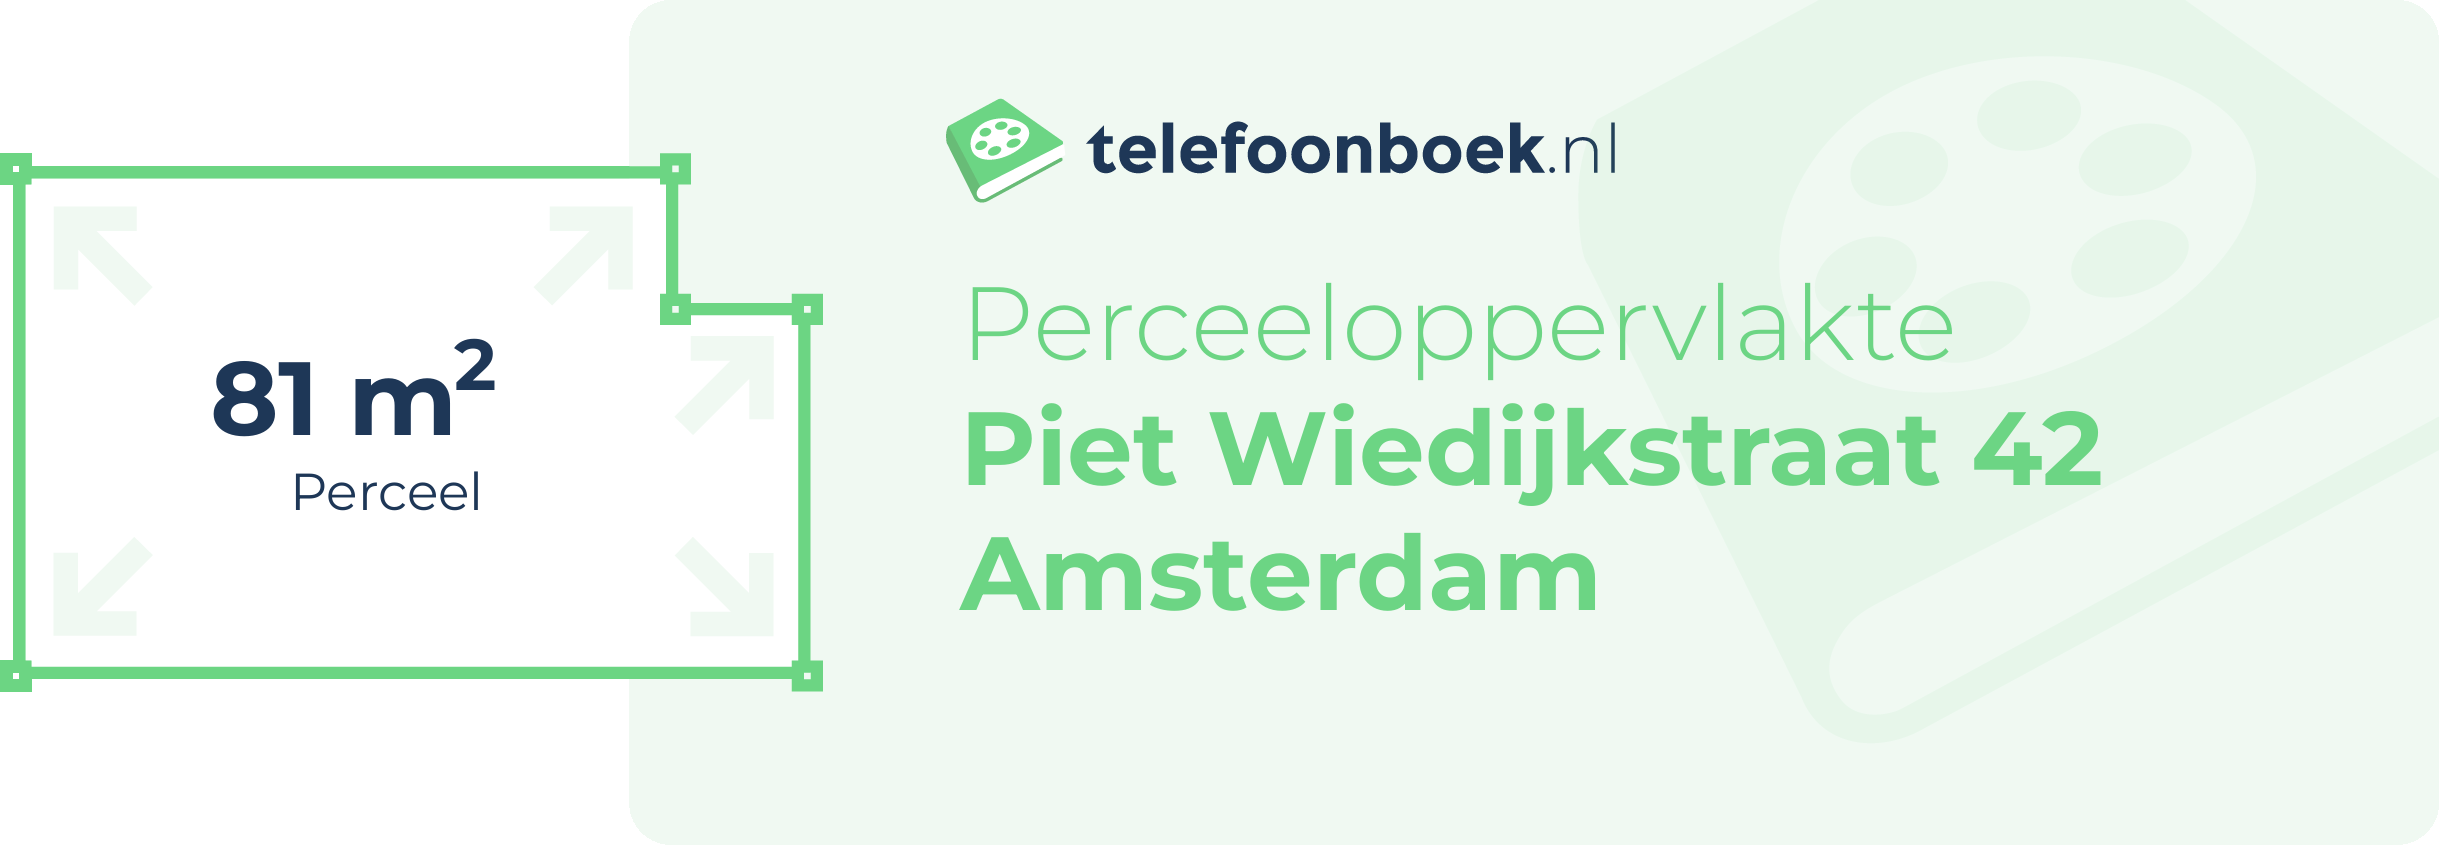 Perceeloppervlakte Piet Wiedijkstraat 42 Amsterdam